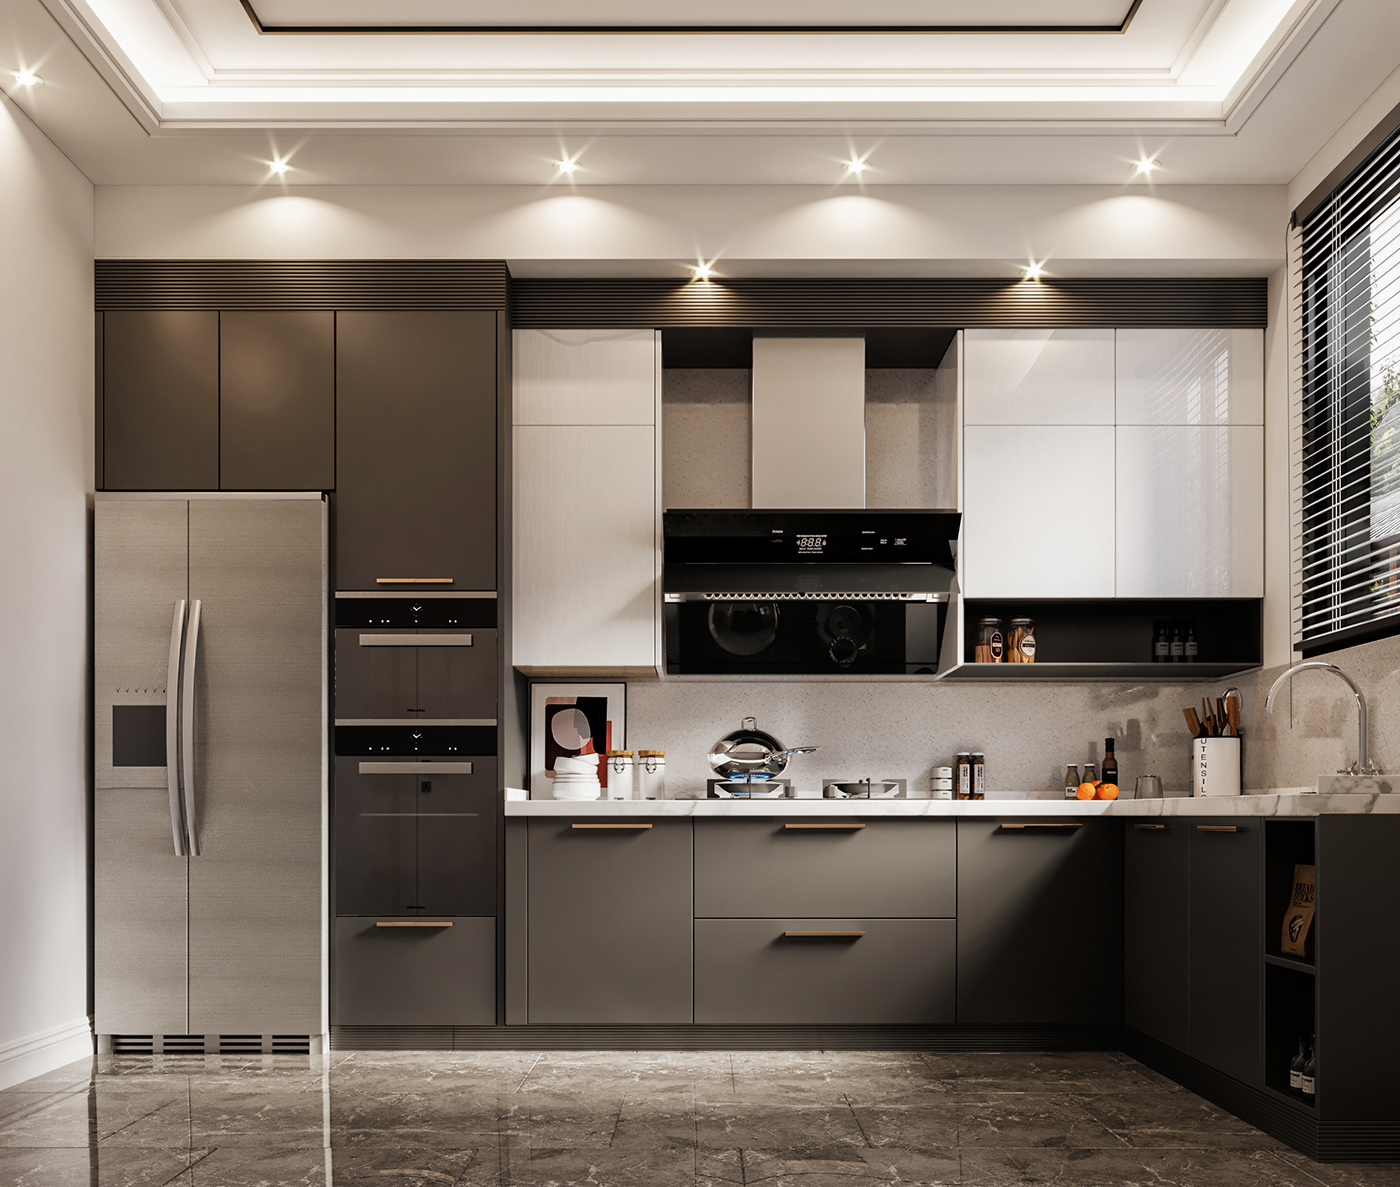 3dsmax architecture corona render  Interior interior design  kitchen kitchen design kitchens modern